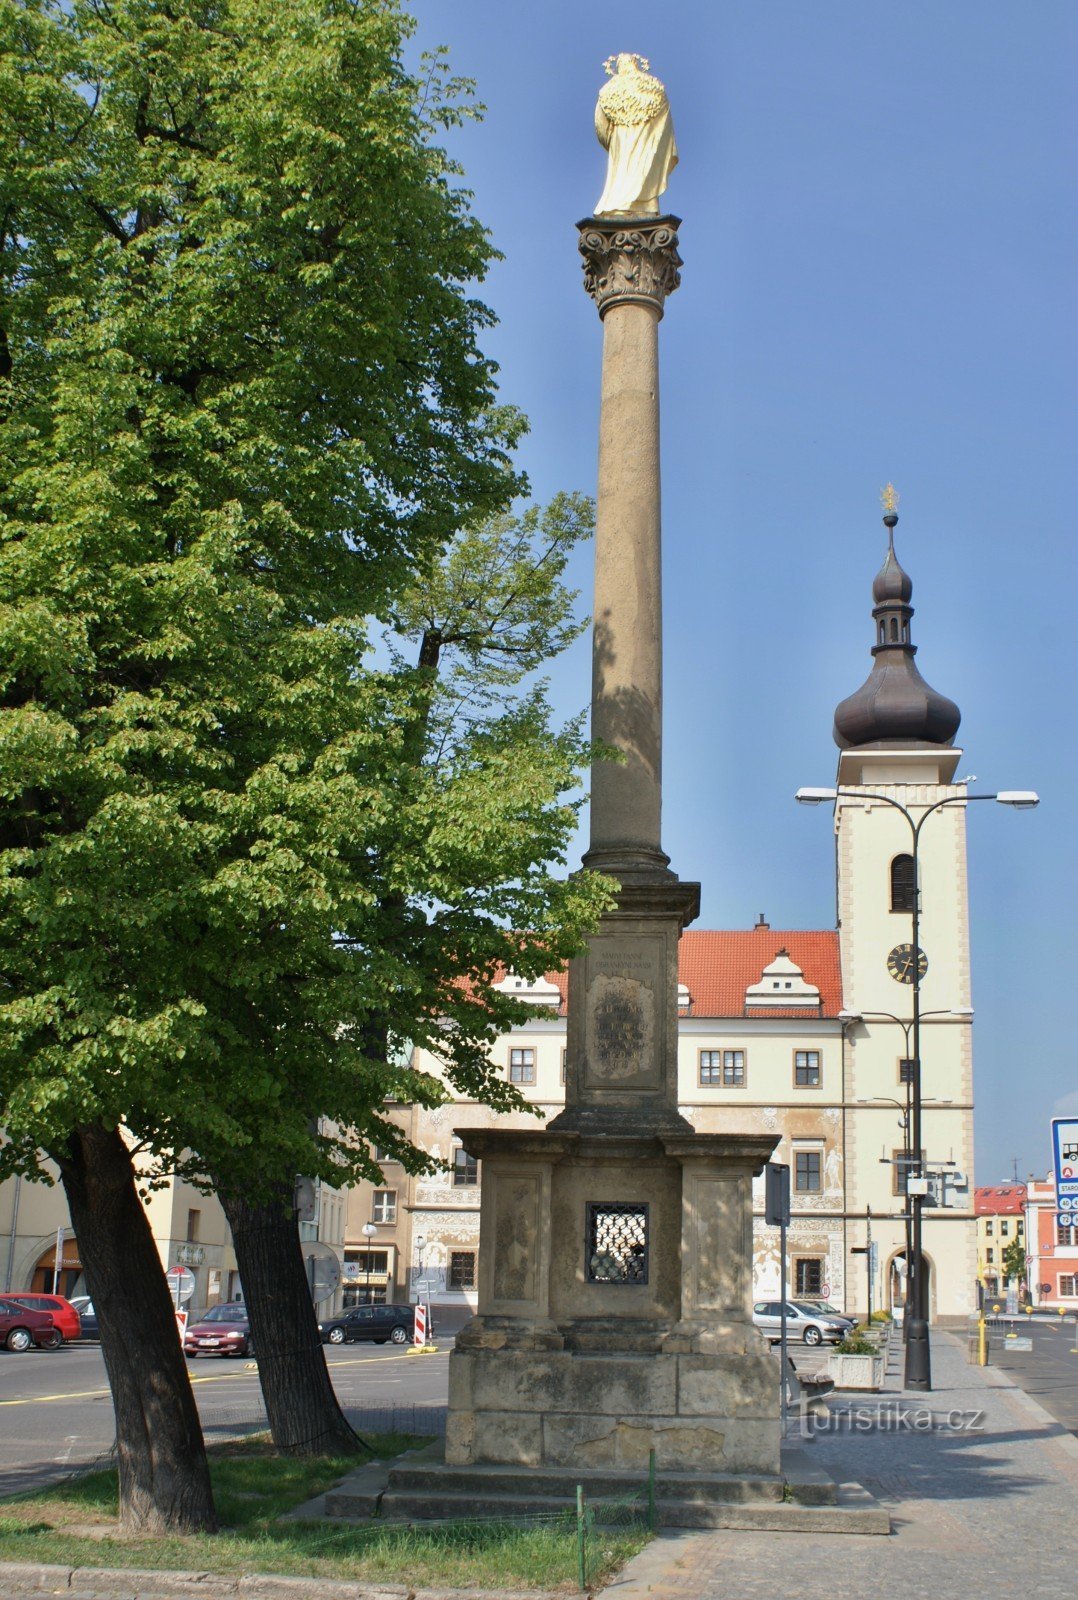 marijanski steber in mestna hiša